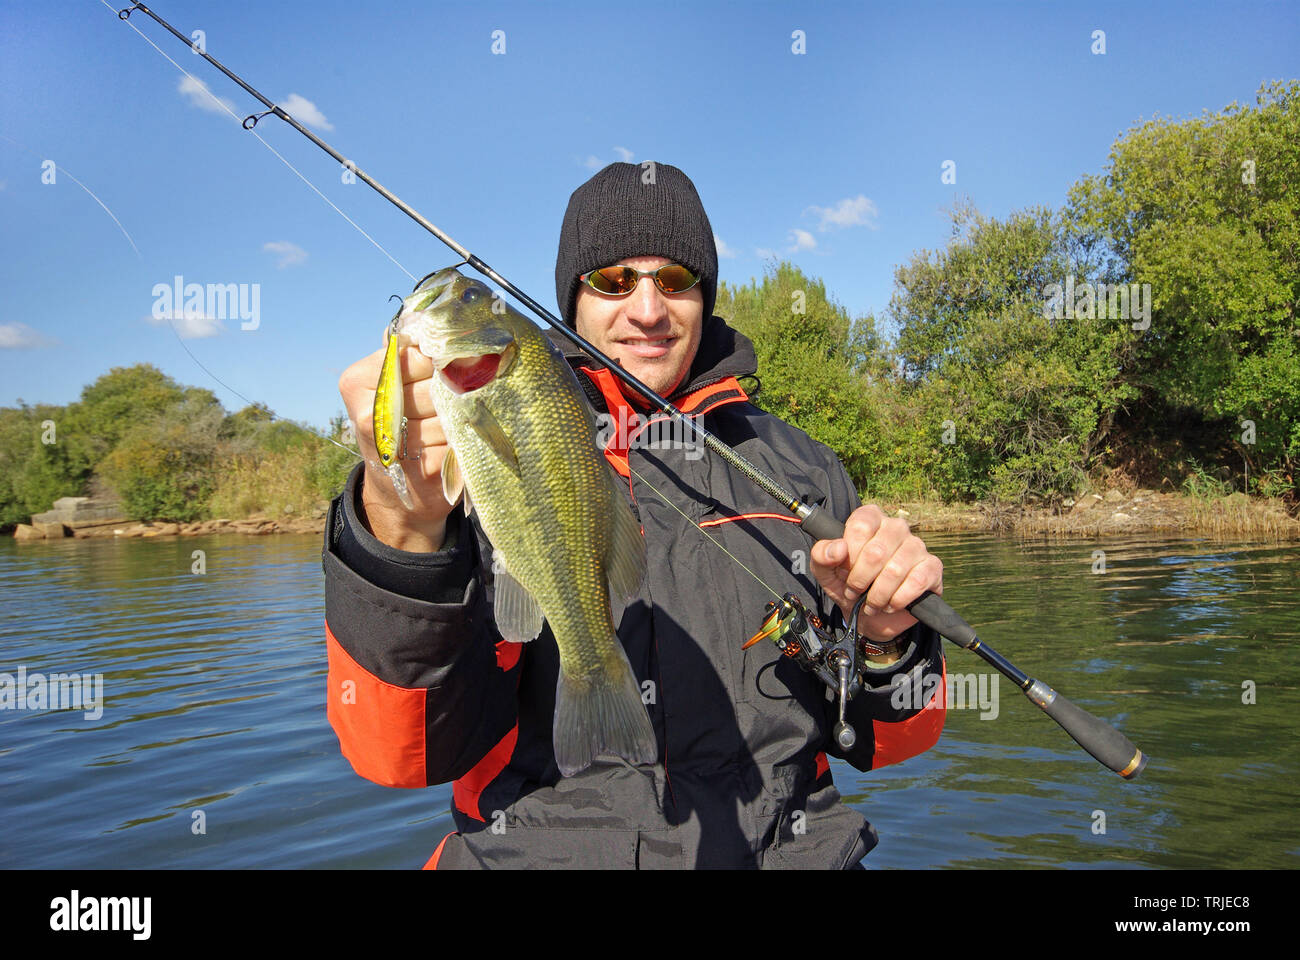 Lucky fisherman holding a larg serran. La pêche en eau douce, pêche au leurre, pêche en bateau Banque D'Images